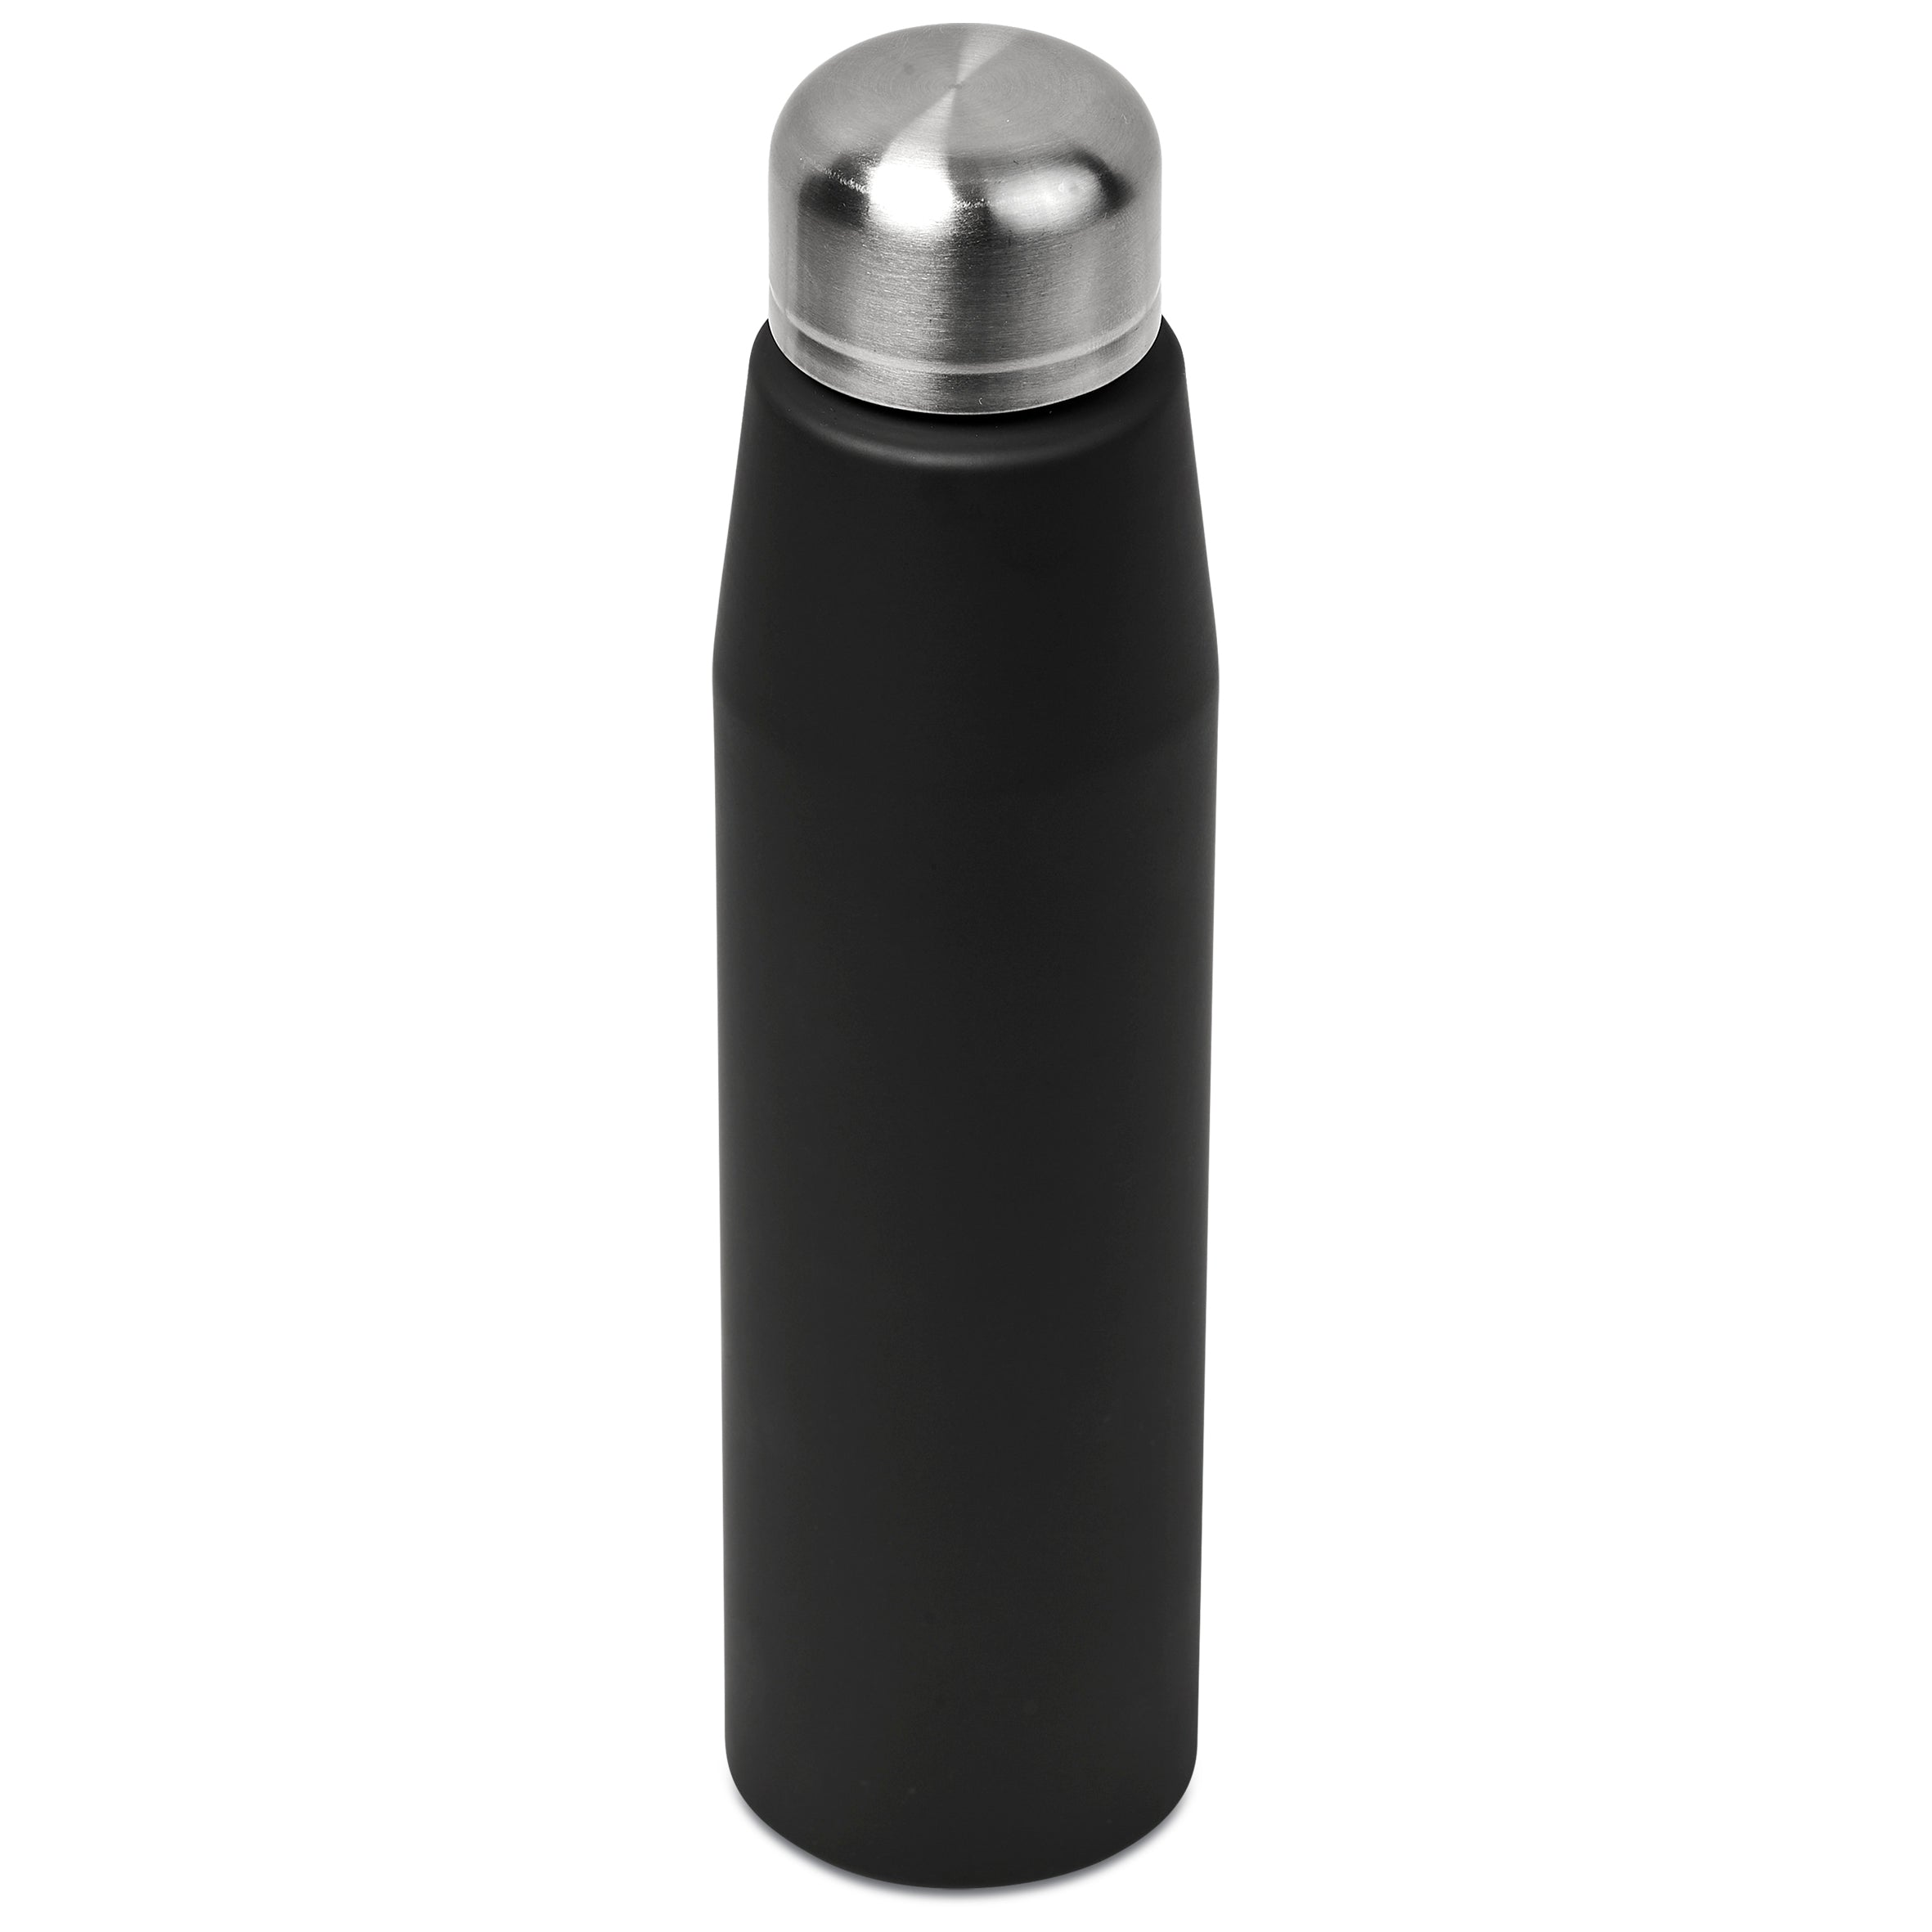 Omega Lite Aluminium Water Bottle - 700ml Black / BL